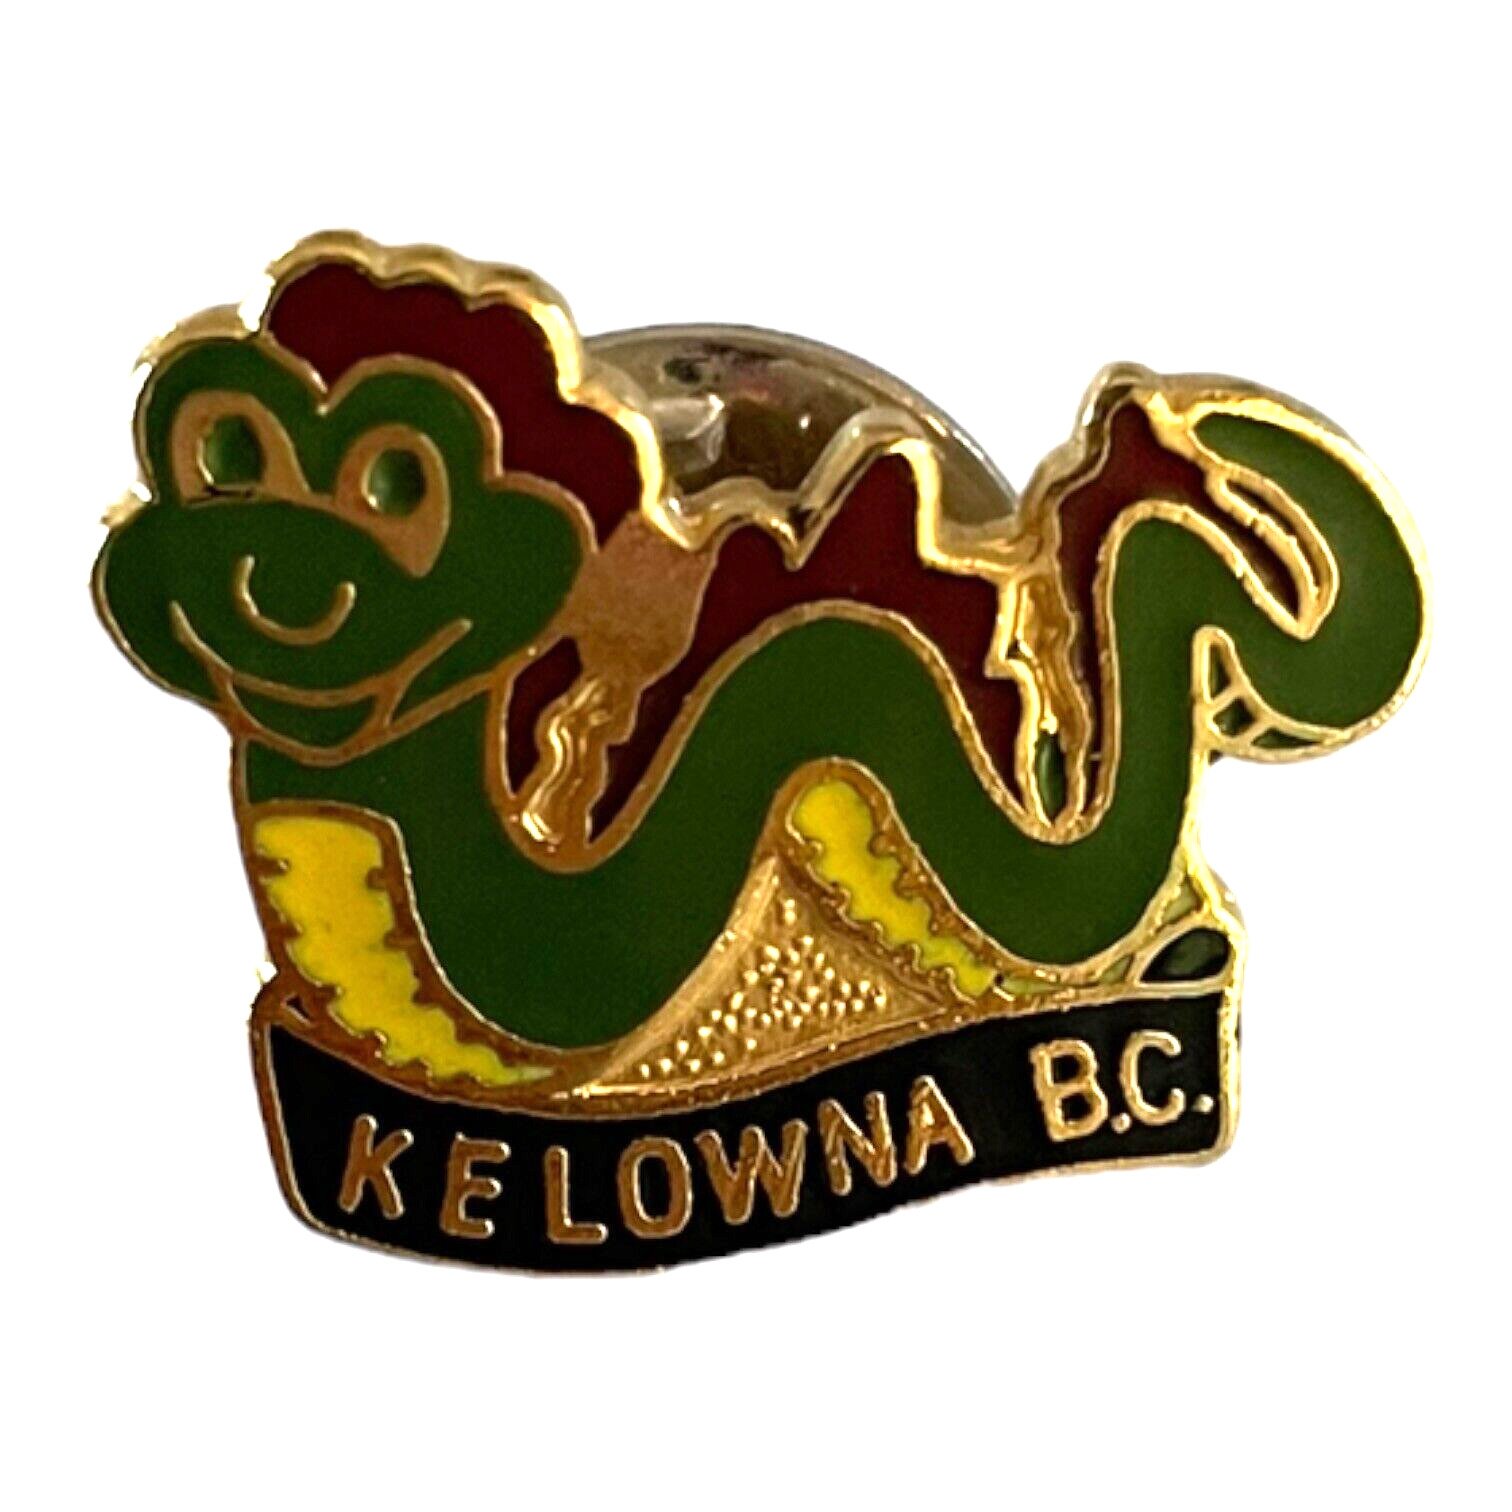 Kelowna B.C. Souvenir Travel Pin Vtg Cloisonne Enamel & Metal Lapel Pin Snake